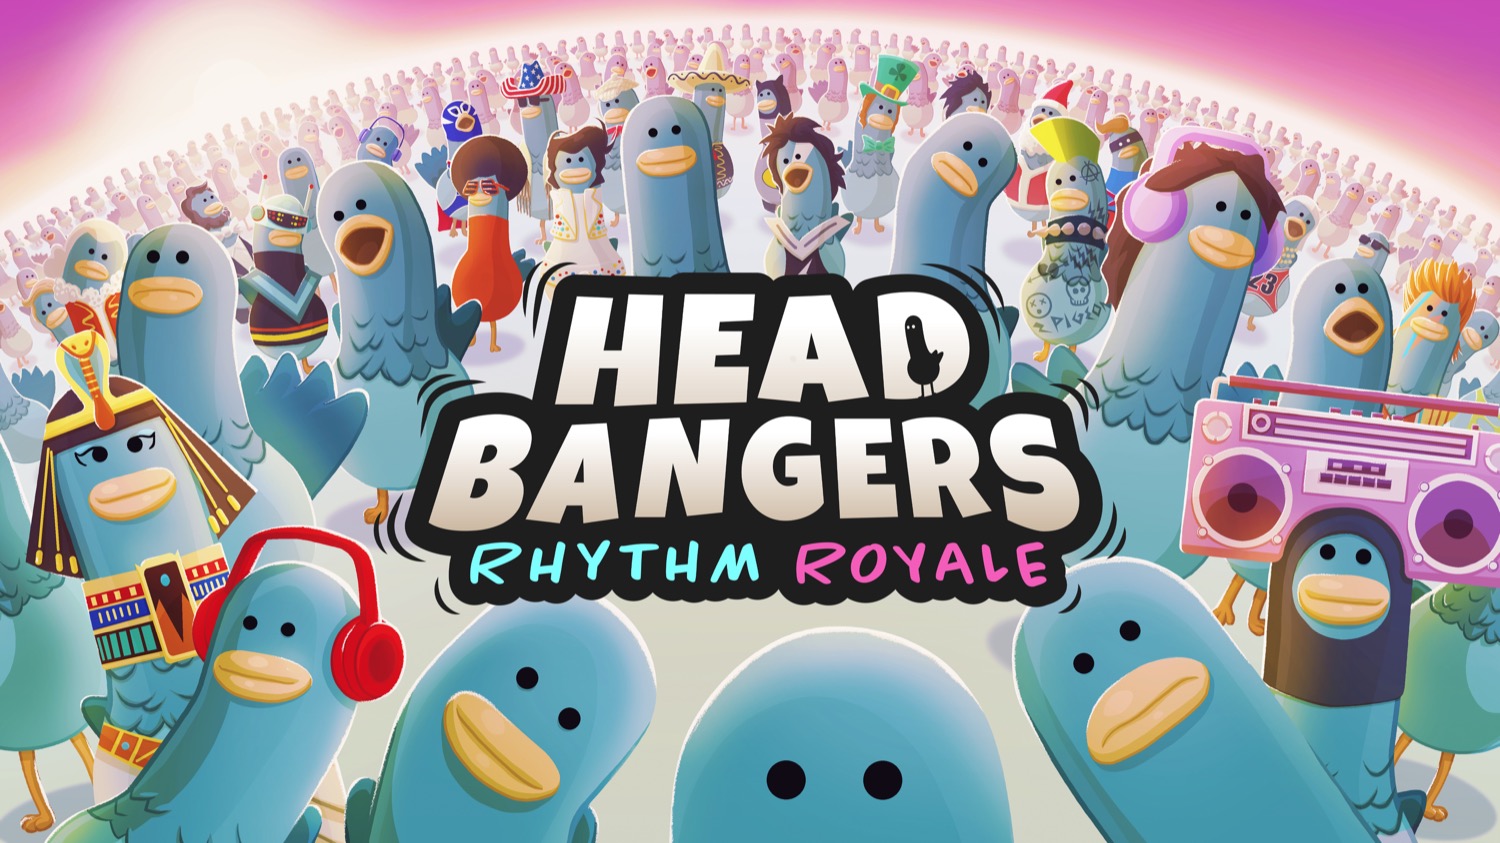 Королевская битва Headbangers Rhythm Royale получила дату релиза и геймплейный трейлер: с сайта NEWXBOXONE.RU